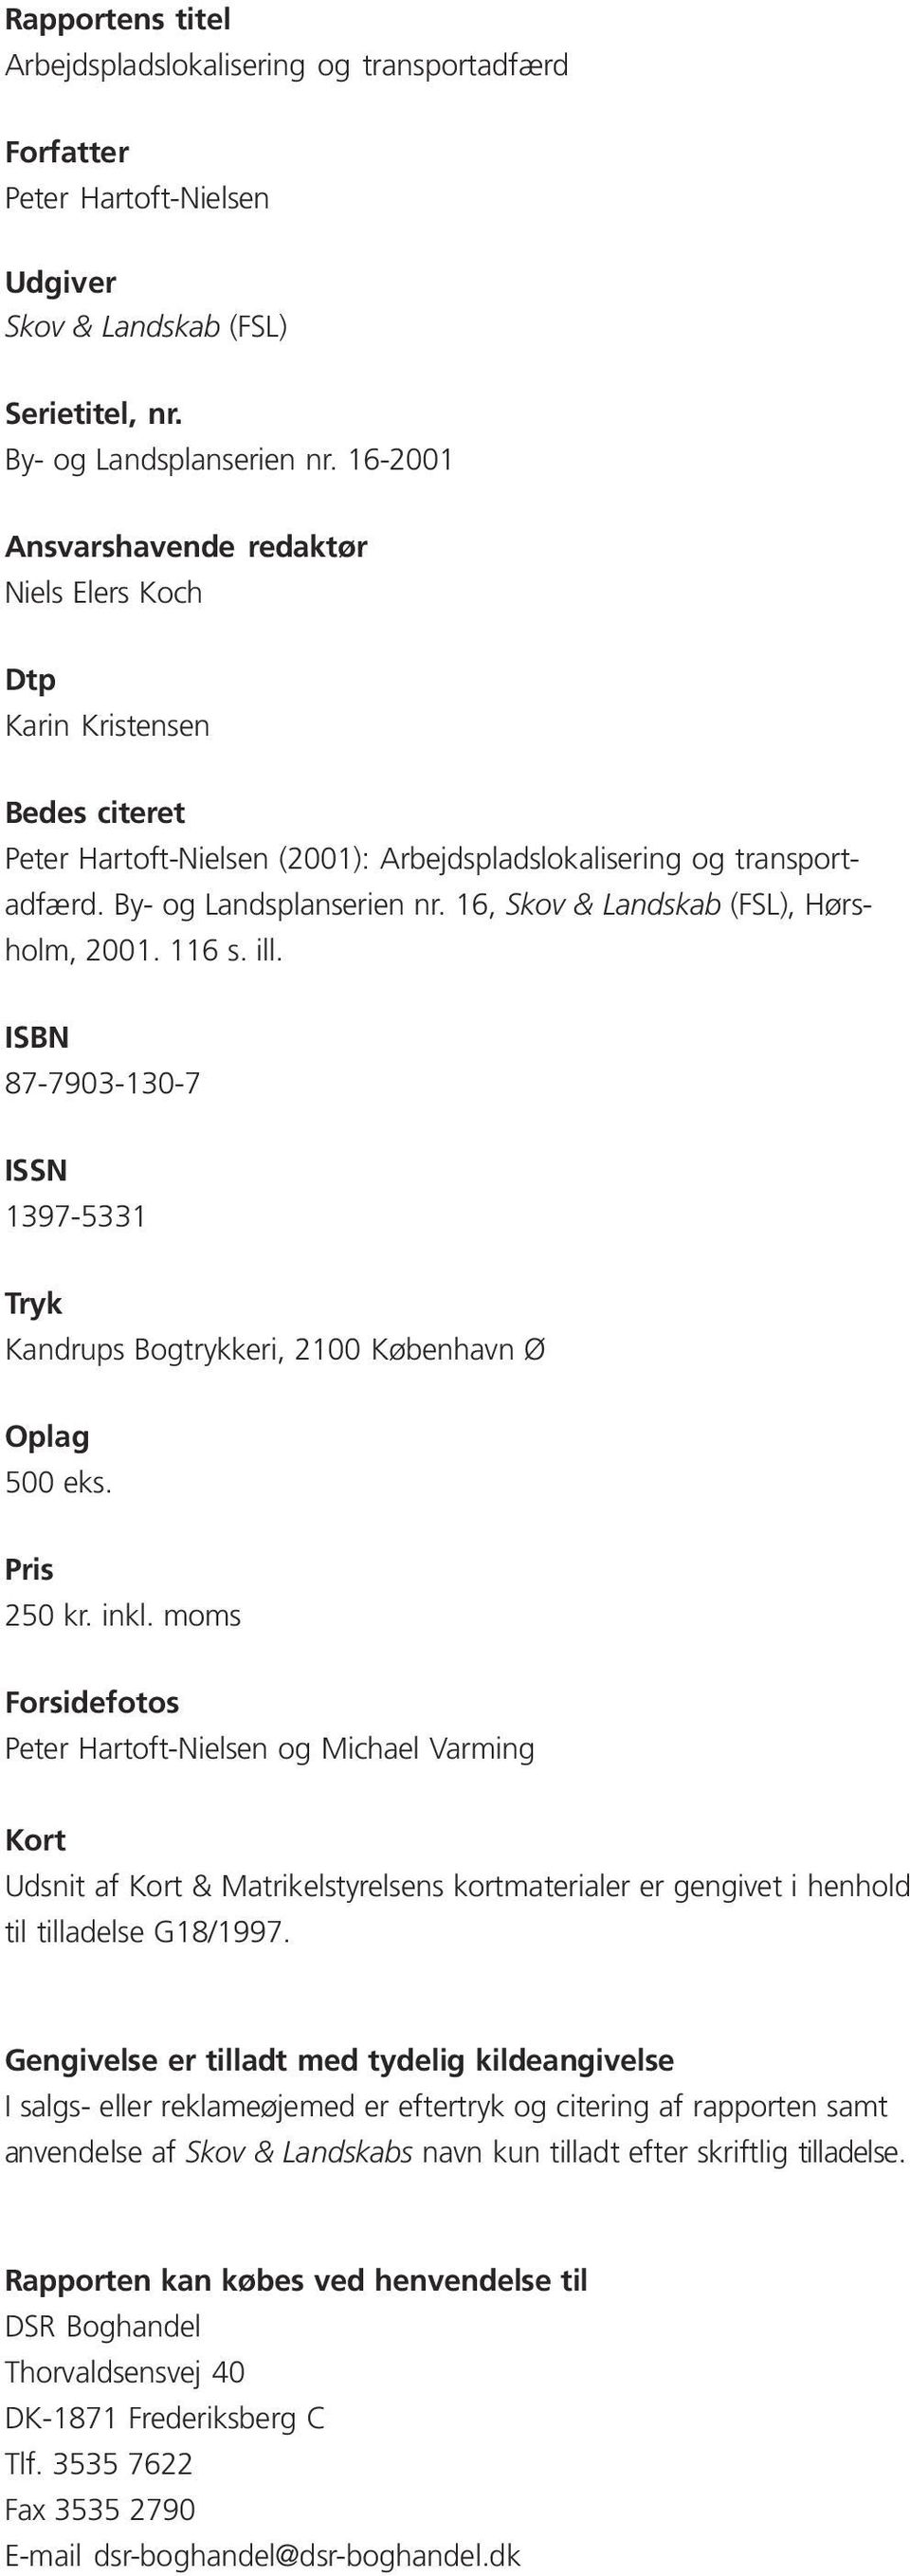 16, Skov & Landskab (FSL), Hørsholm, 1. 116 s. ill. ISBN 87-793-1-7 ISSN 1397-5331 Tryk Kandrups Bogtrykkeri, København Ø Oplag 5 eks. Pris 25 kr. inkl.